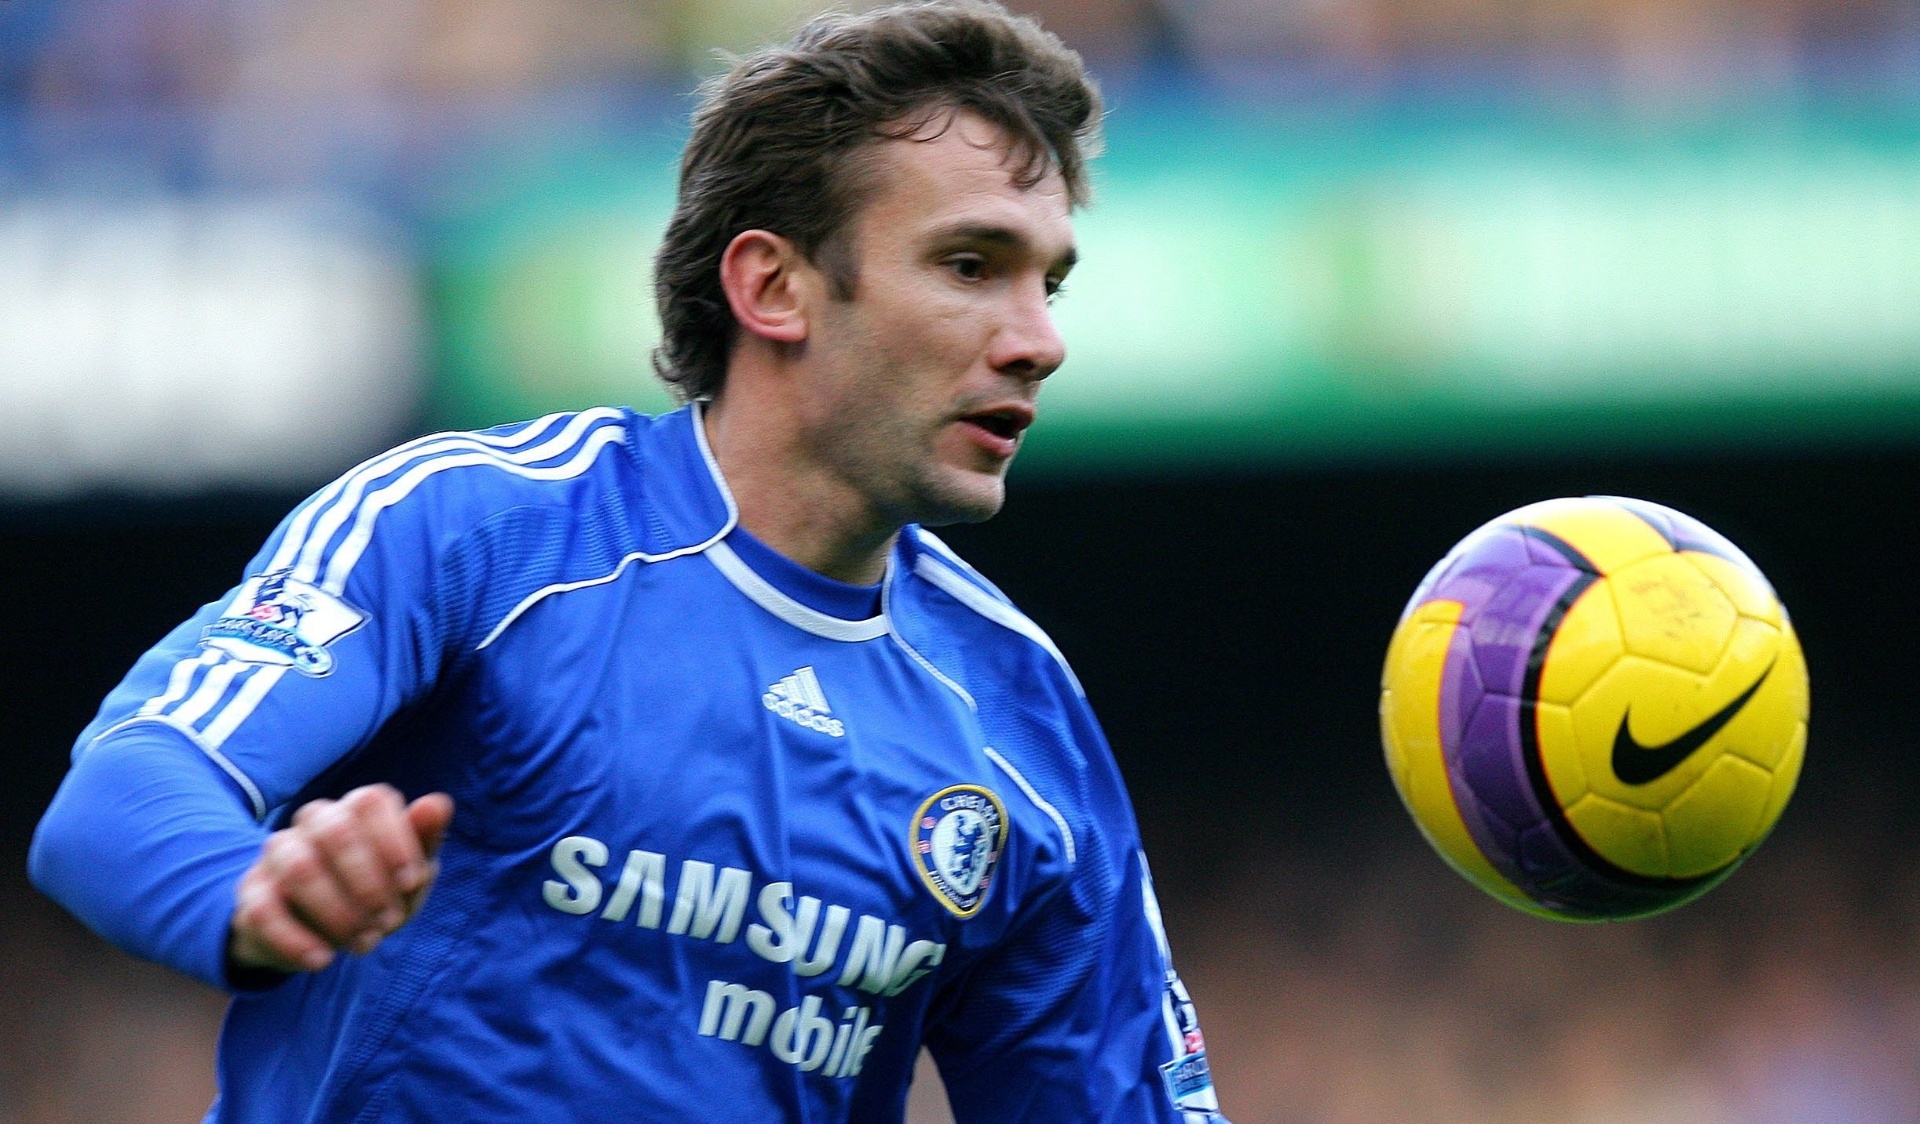 10º lugar: Andriy Shevchenko (atacante): 48 gols – Dynamo Kyiv (15), Milan (29) e Chelsea (4). Situação atual: Aposentado.